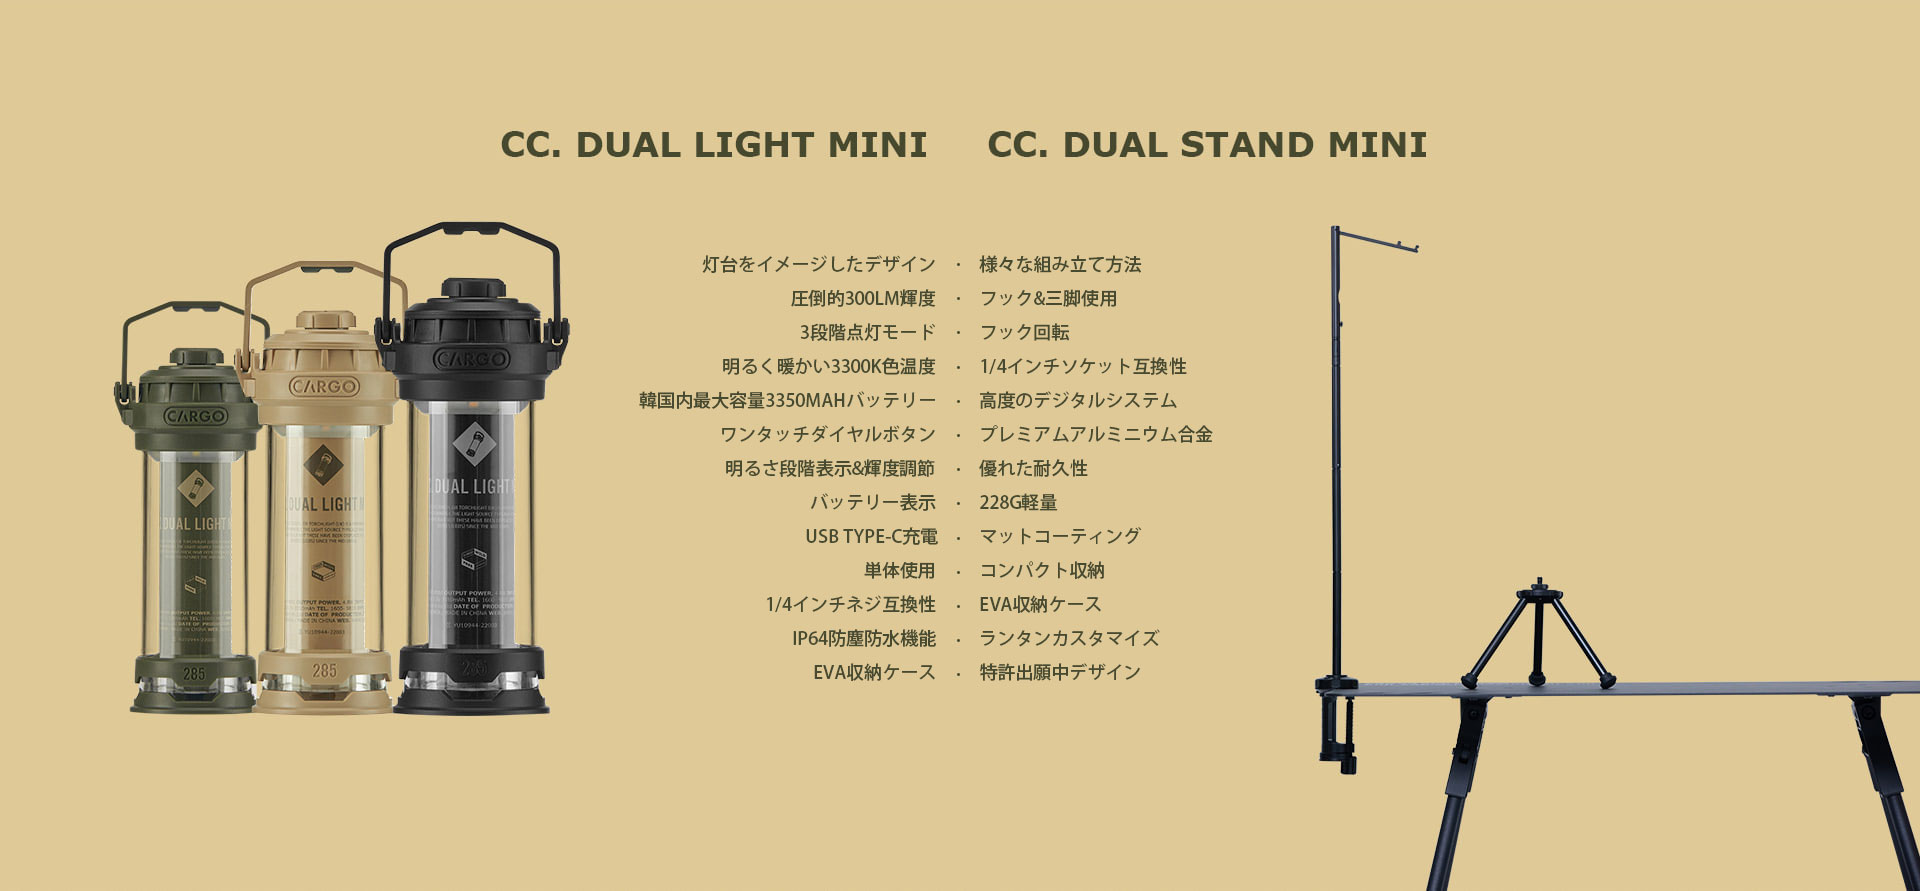 CC.DUAL LIGHT MINIとCC.DUAL STAND MINI